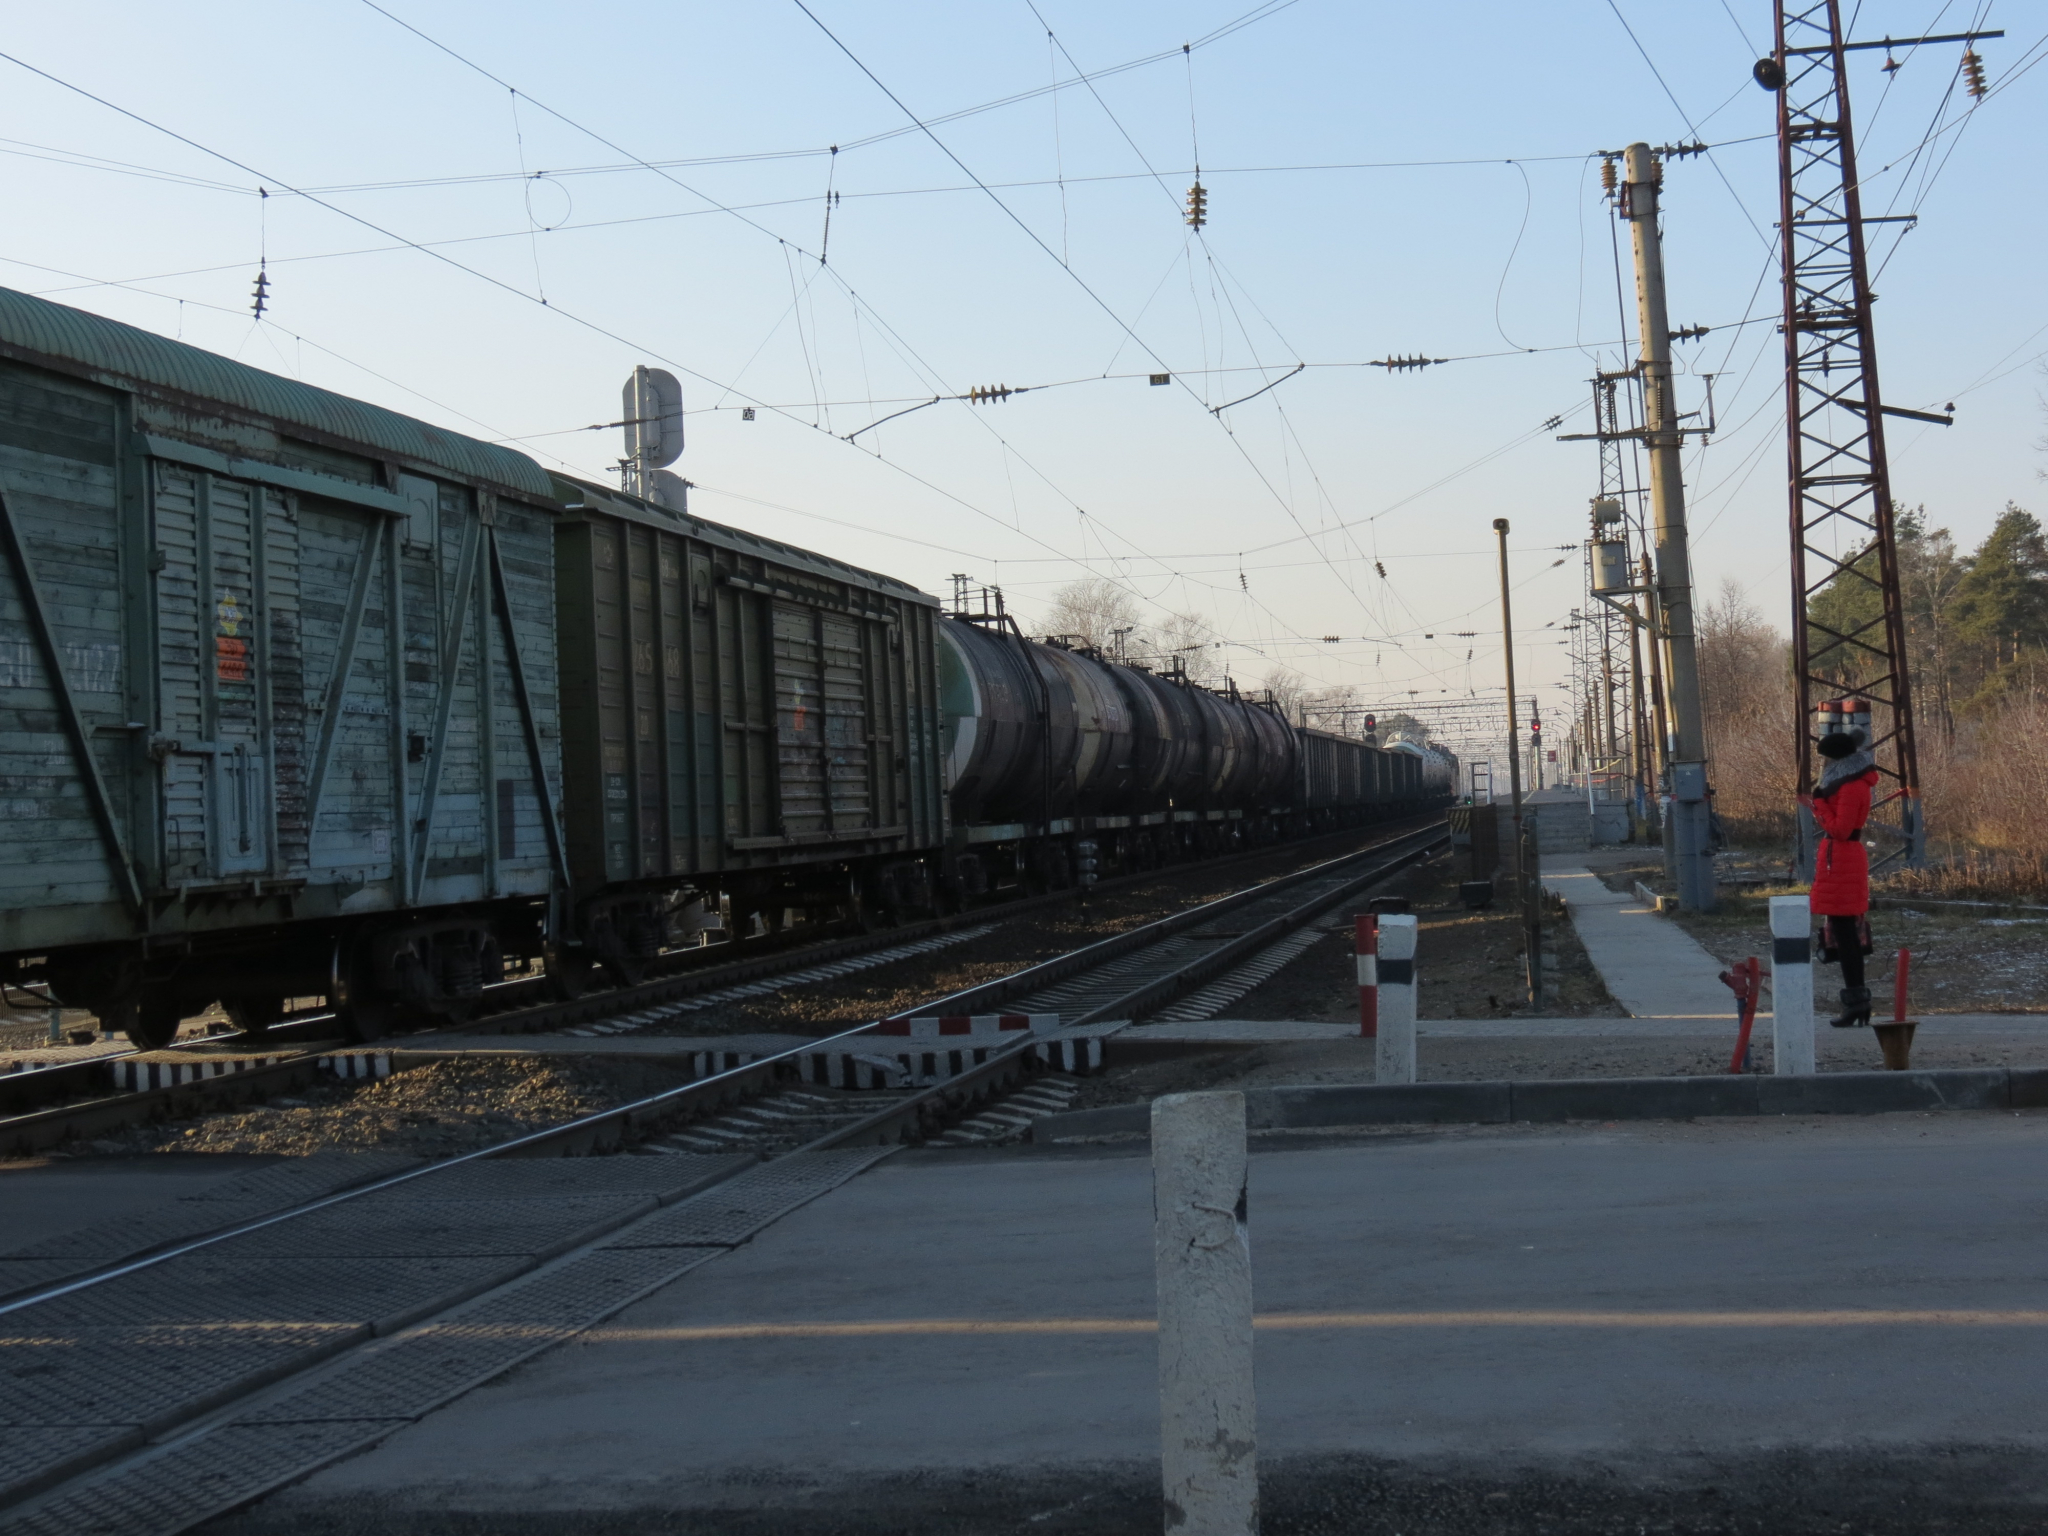 Жителям Мордовии напоминают о правилах нахождения на железнодорожных путях.